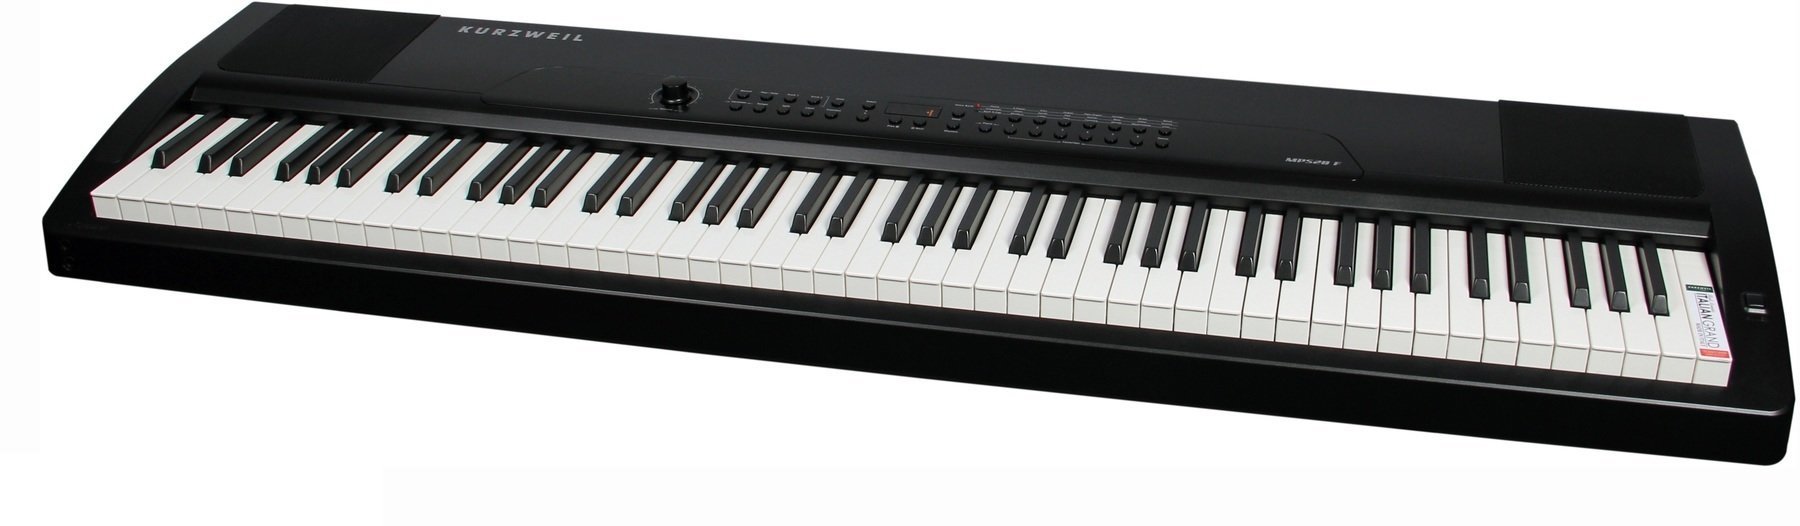 Piano de scène Kurzweil MPS20 Portable Digital Piano